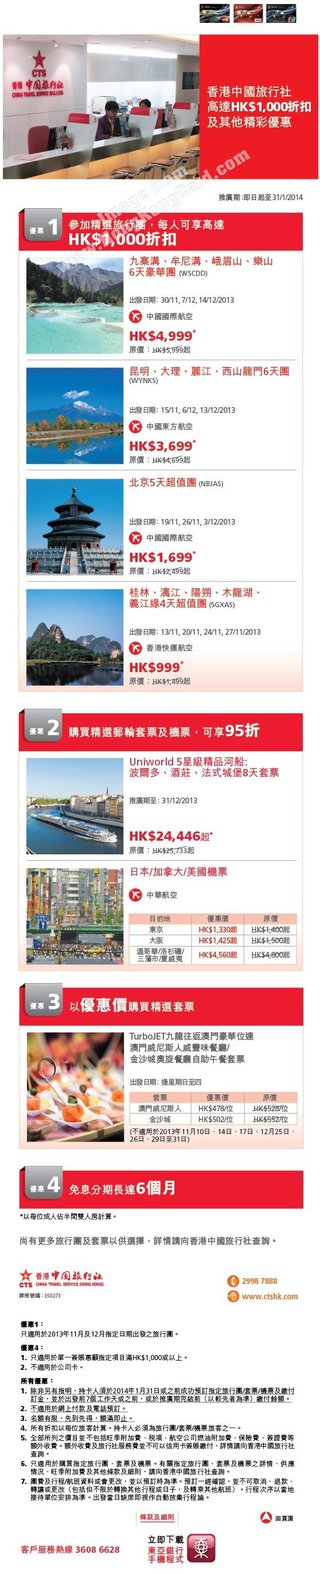 香港中國旅行社高達$1,000折扣